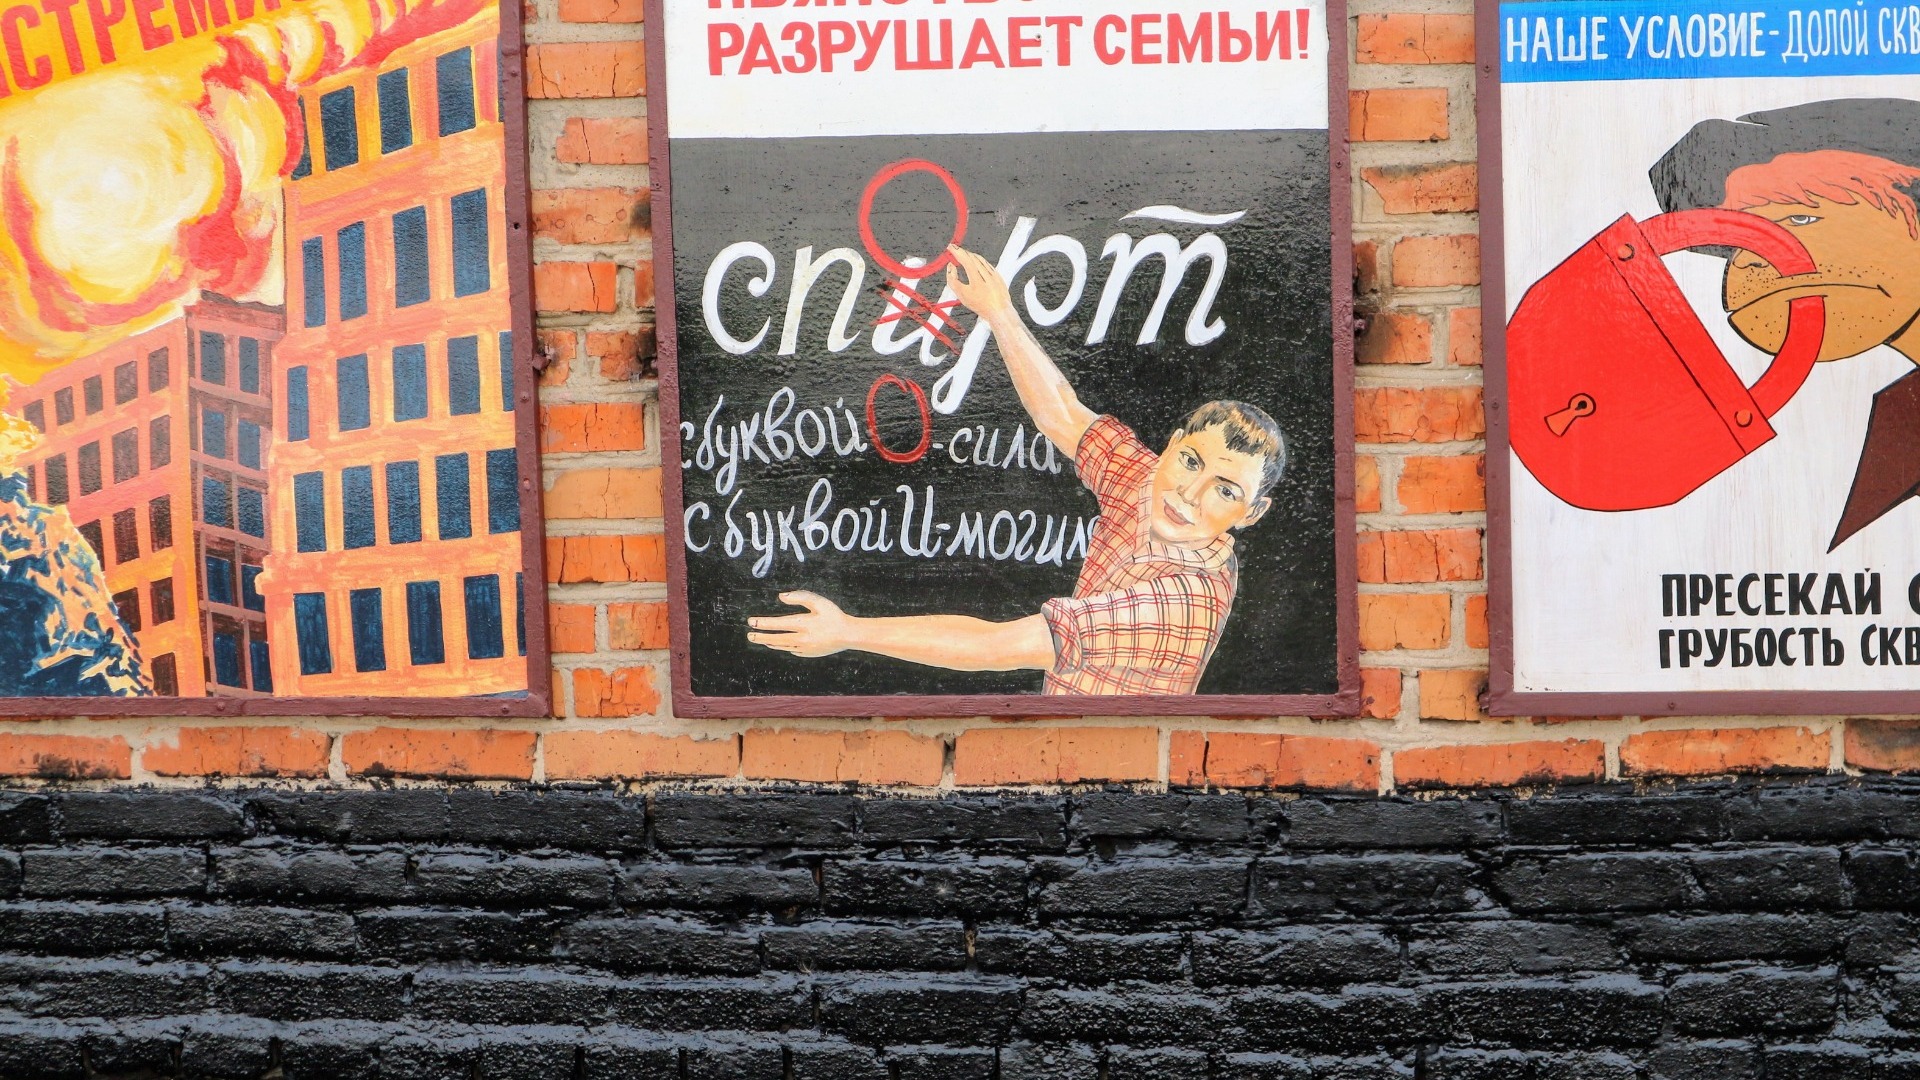 В День весны и труда в Омске ограничат продажу алкоголя